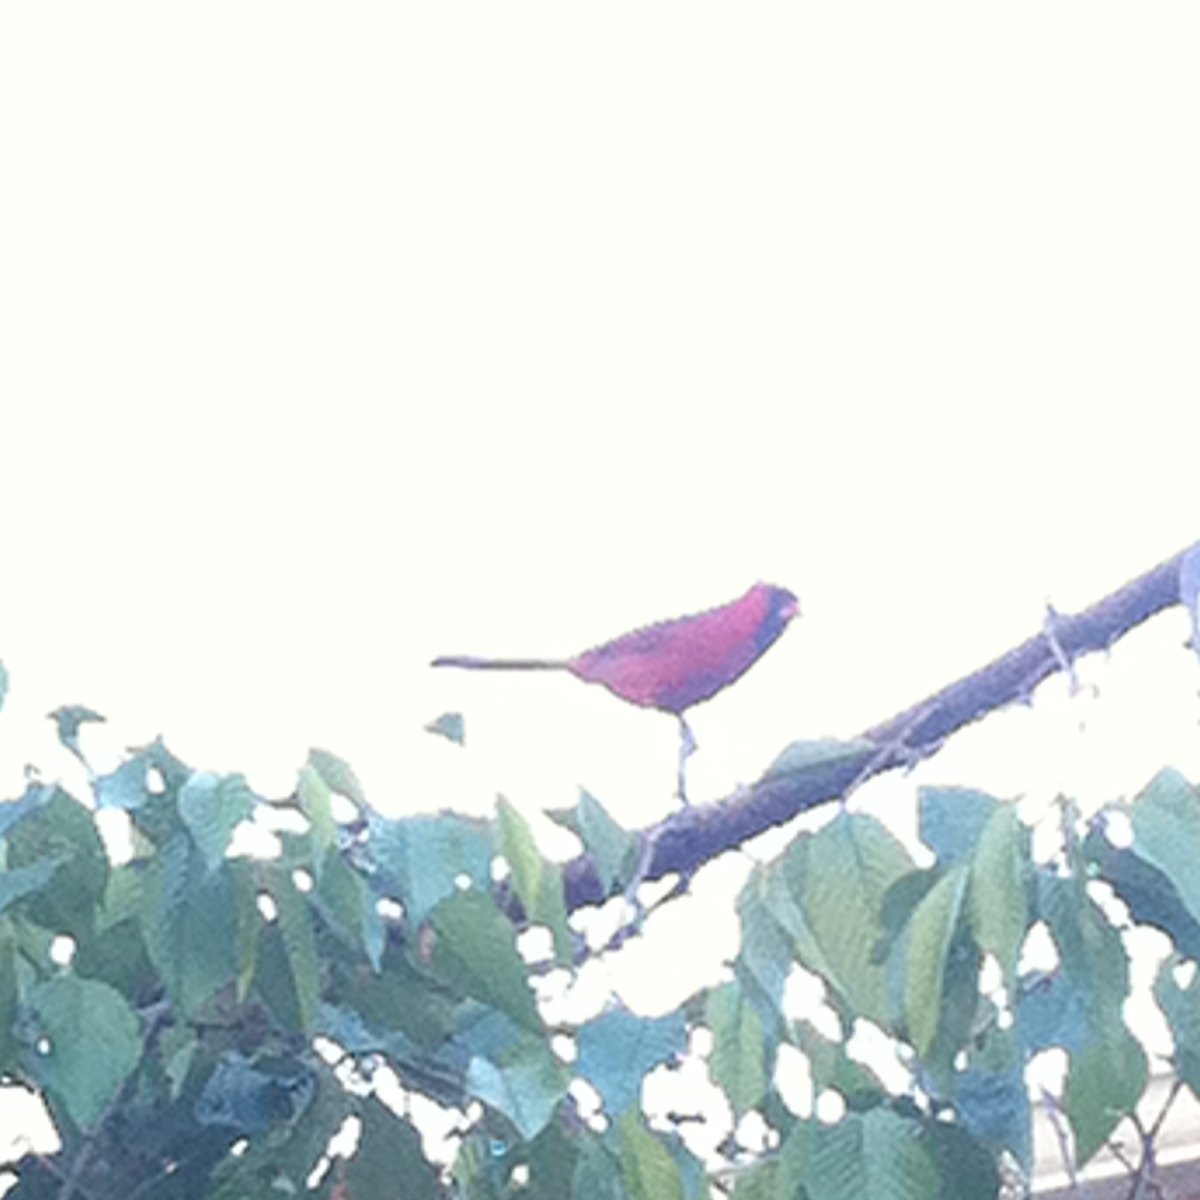 cardinal 